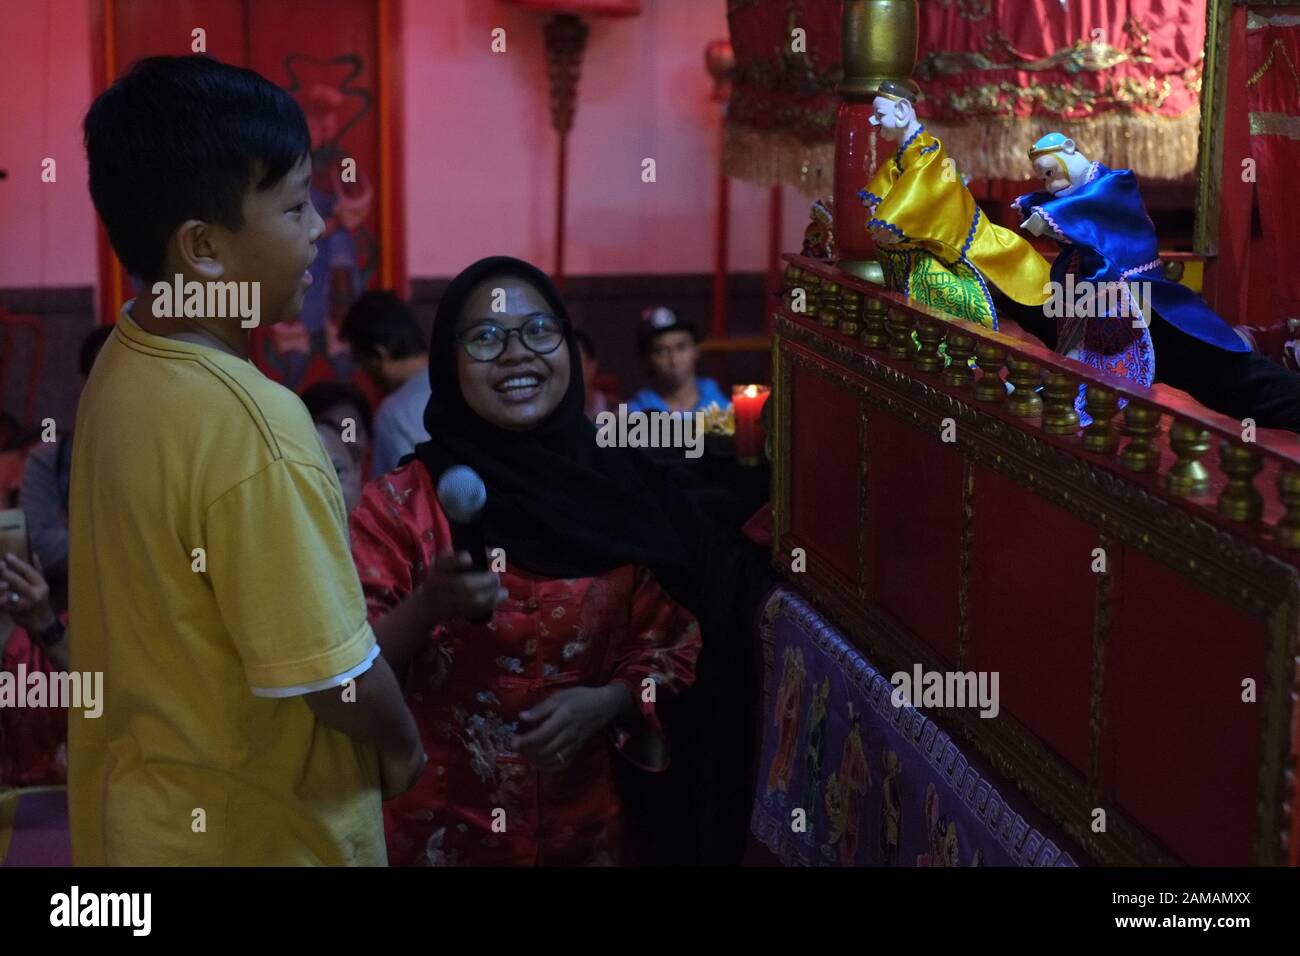 Un garçon et une femme musulmane devant un spectacle de marionnettes chinoises traditionnelles. Banque D'Images